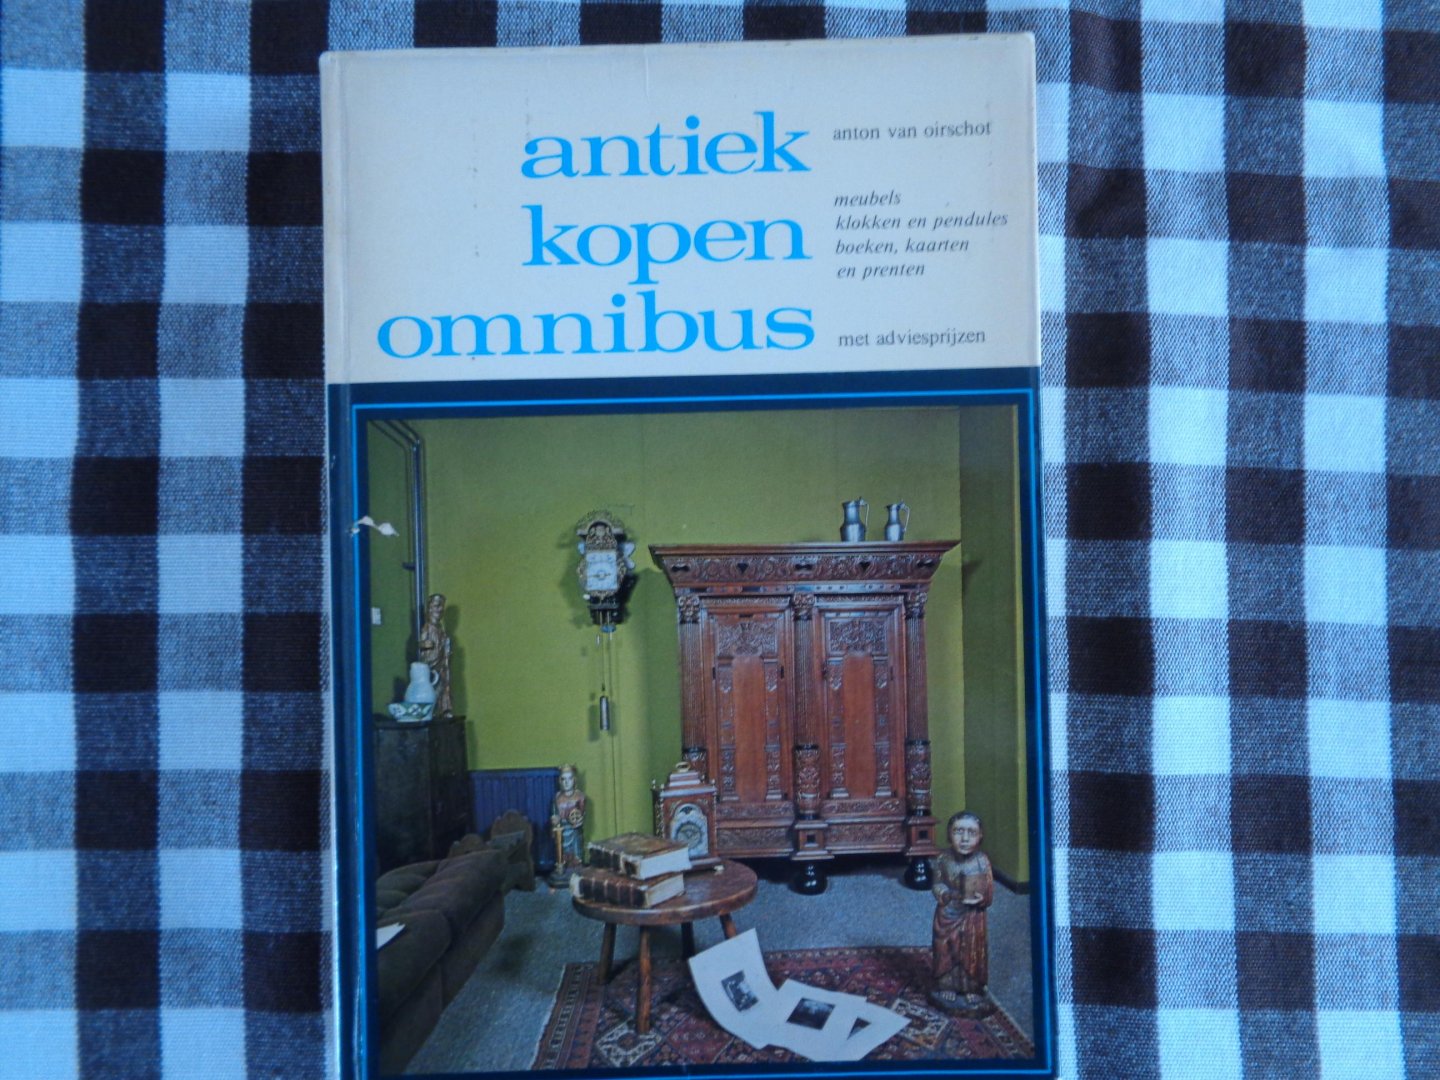 Oirschot - Antiek kopen omnibus /